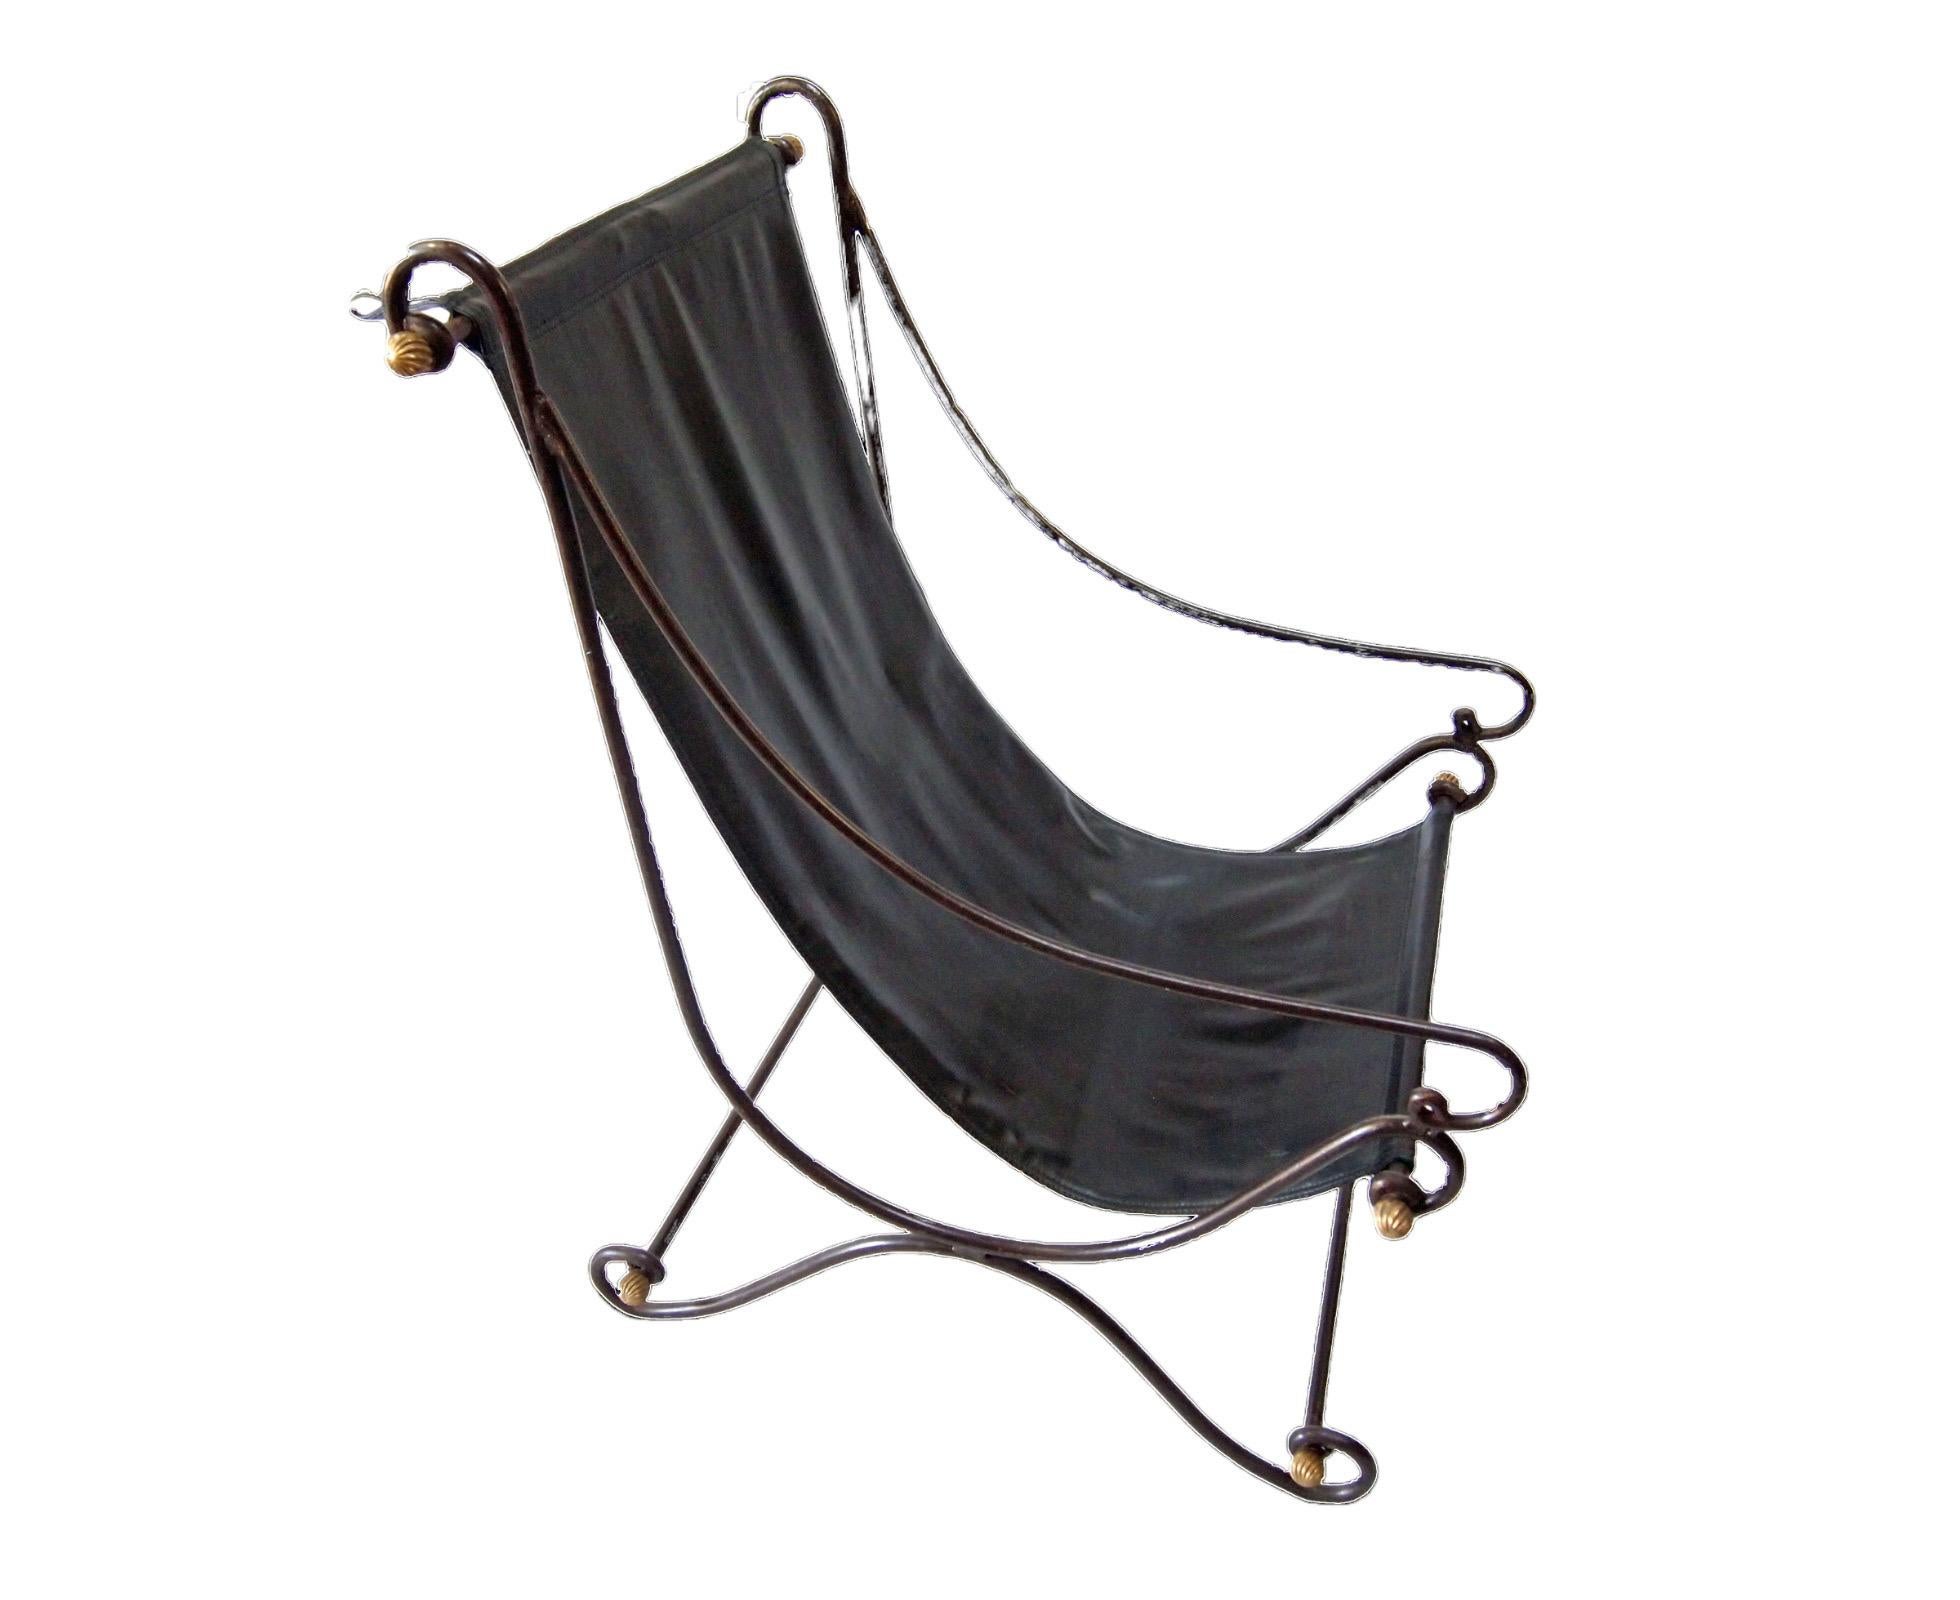 Paar Sling Lounge Chairs aus der Mitte des Jahrhunderts, ca. 1970er Jahre.
Eisengestell mit Verbindungsstangen und vergoldeten, gerippten Bronzekugeln. Jeder Stuhl hat eine Sitzfläche aus schwarzem Lederimitat. Die Sitze lassen sich durch Abnehmen